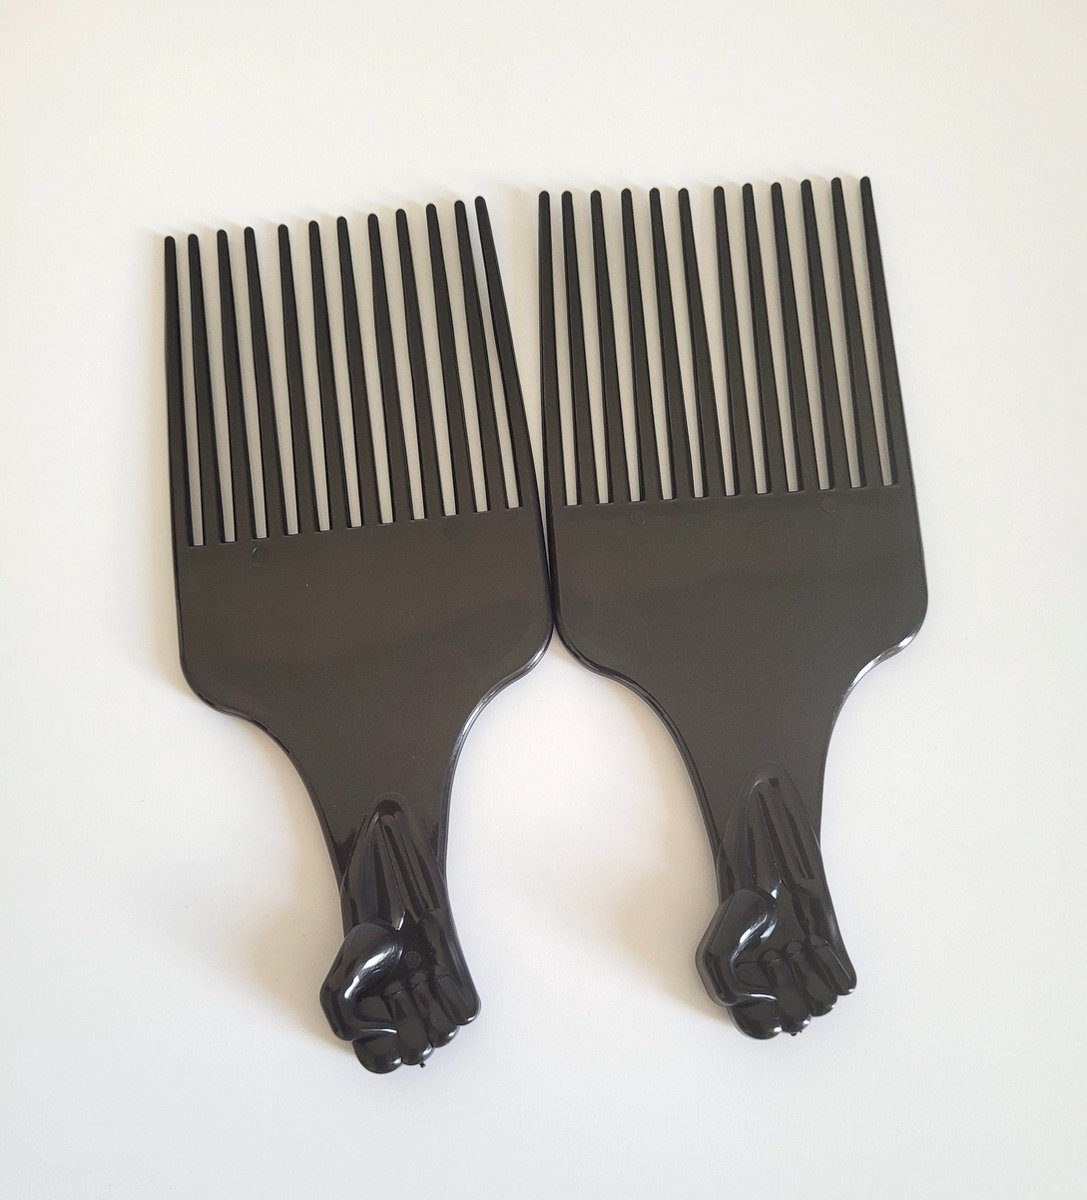 Afro plastic Kam Voor Krullend - 1 stuk steil Haar- Kam voor alle haartype- Zwart kleur -voor dikke lang en dunne haar, krullen, kroeshaar, Barden , Haarkam